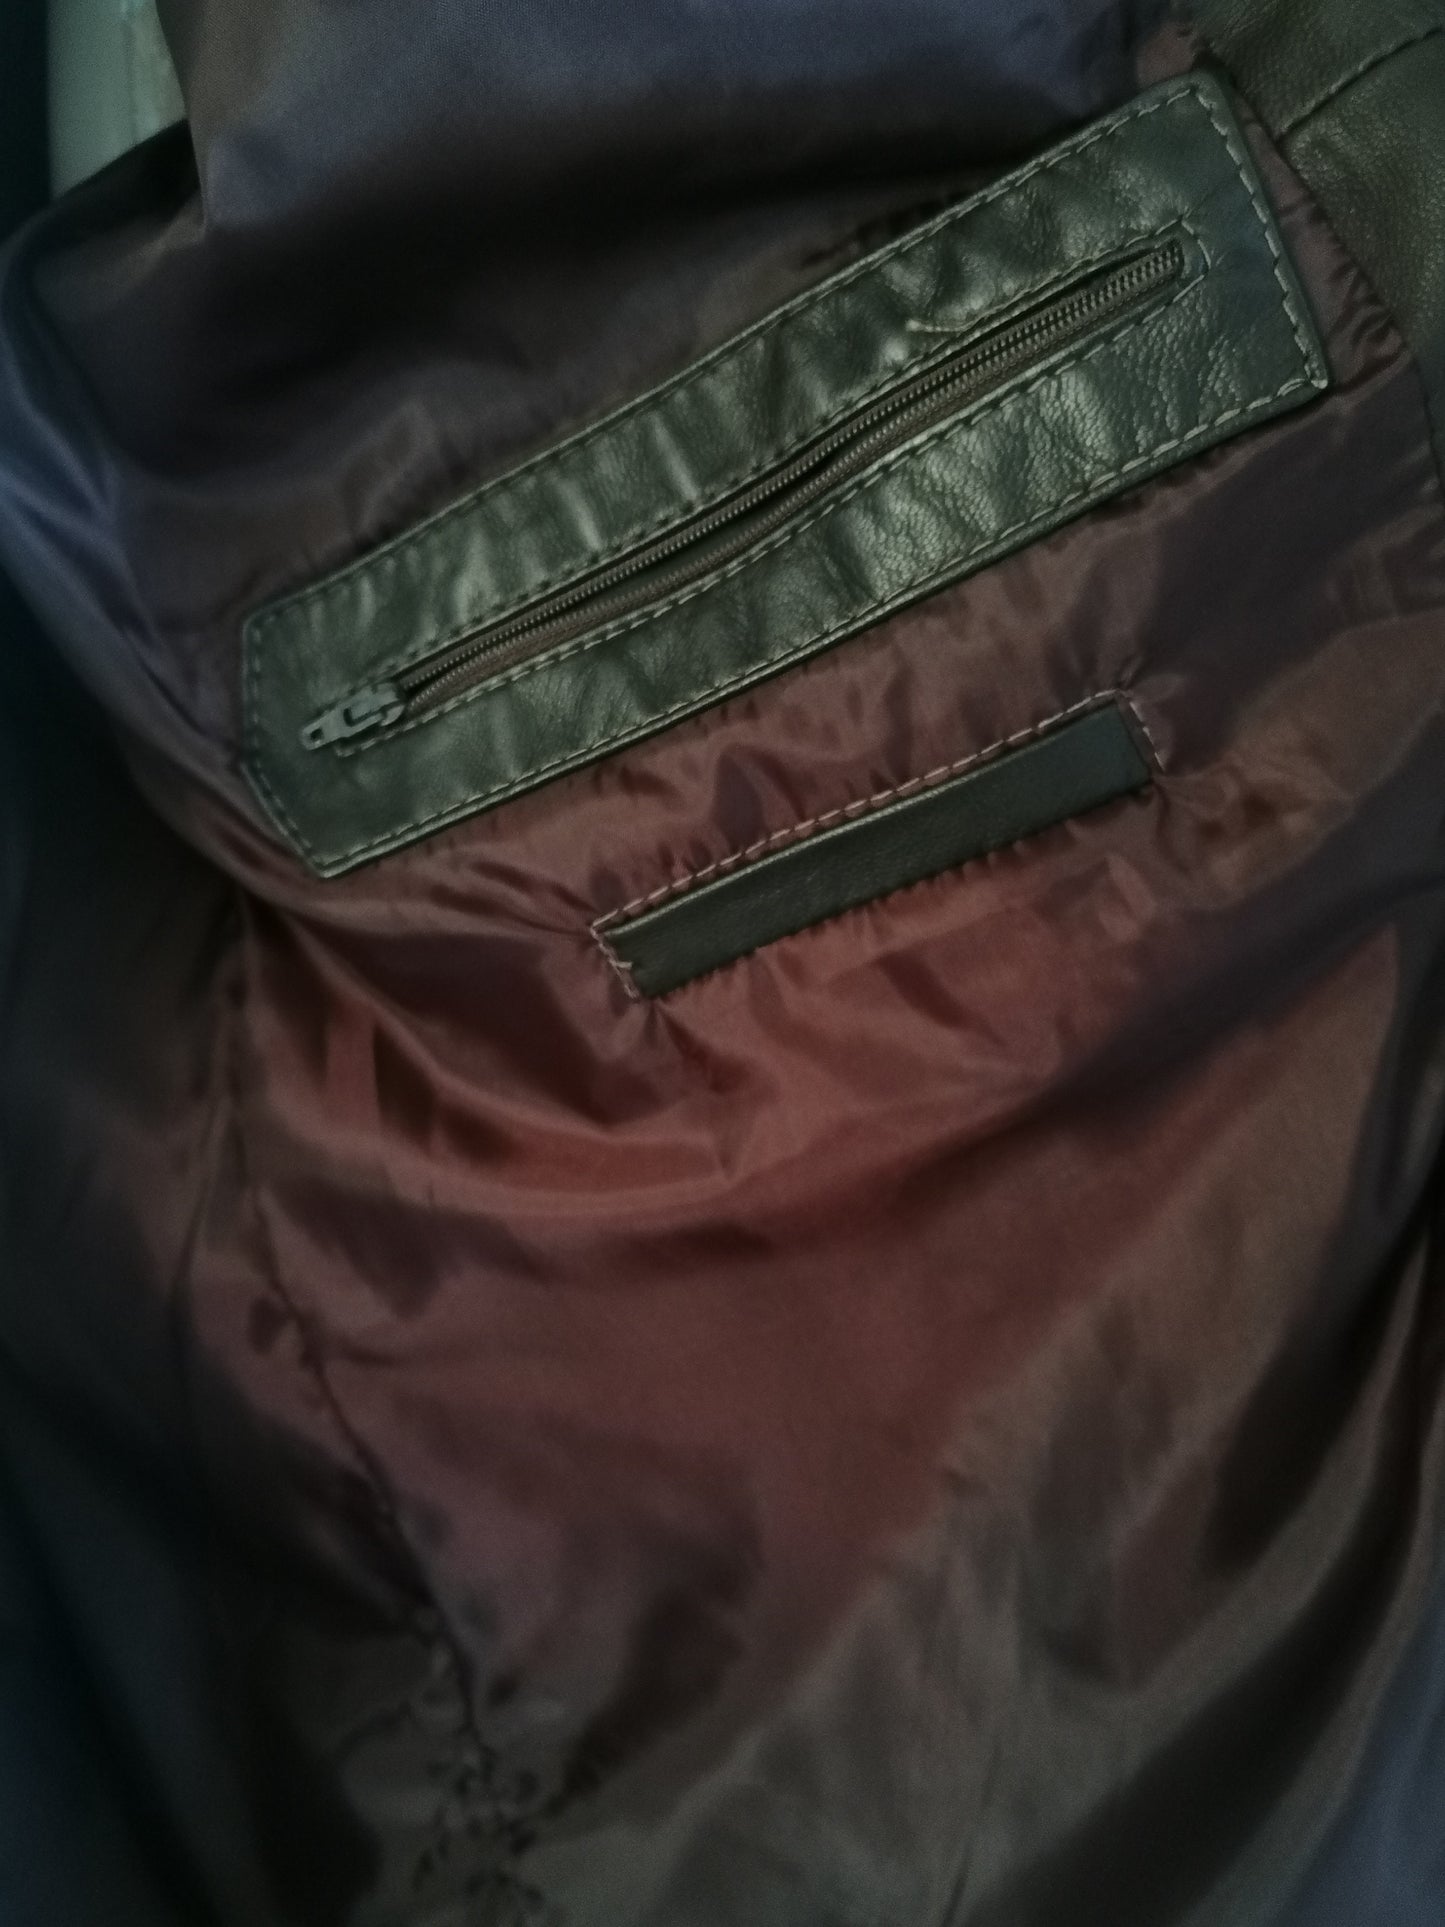 B Choix: Veste en cuir Ledermode L&B. De couleur brun foncé. Taille 54 / L. Papées sur la manche.